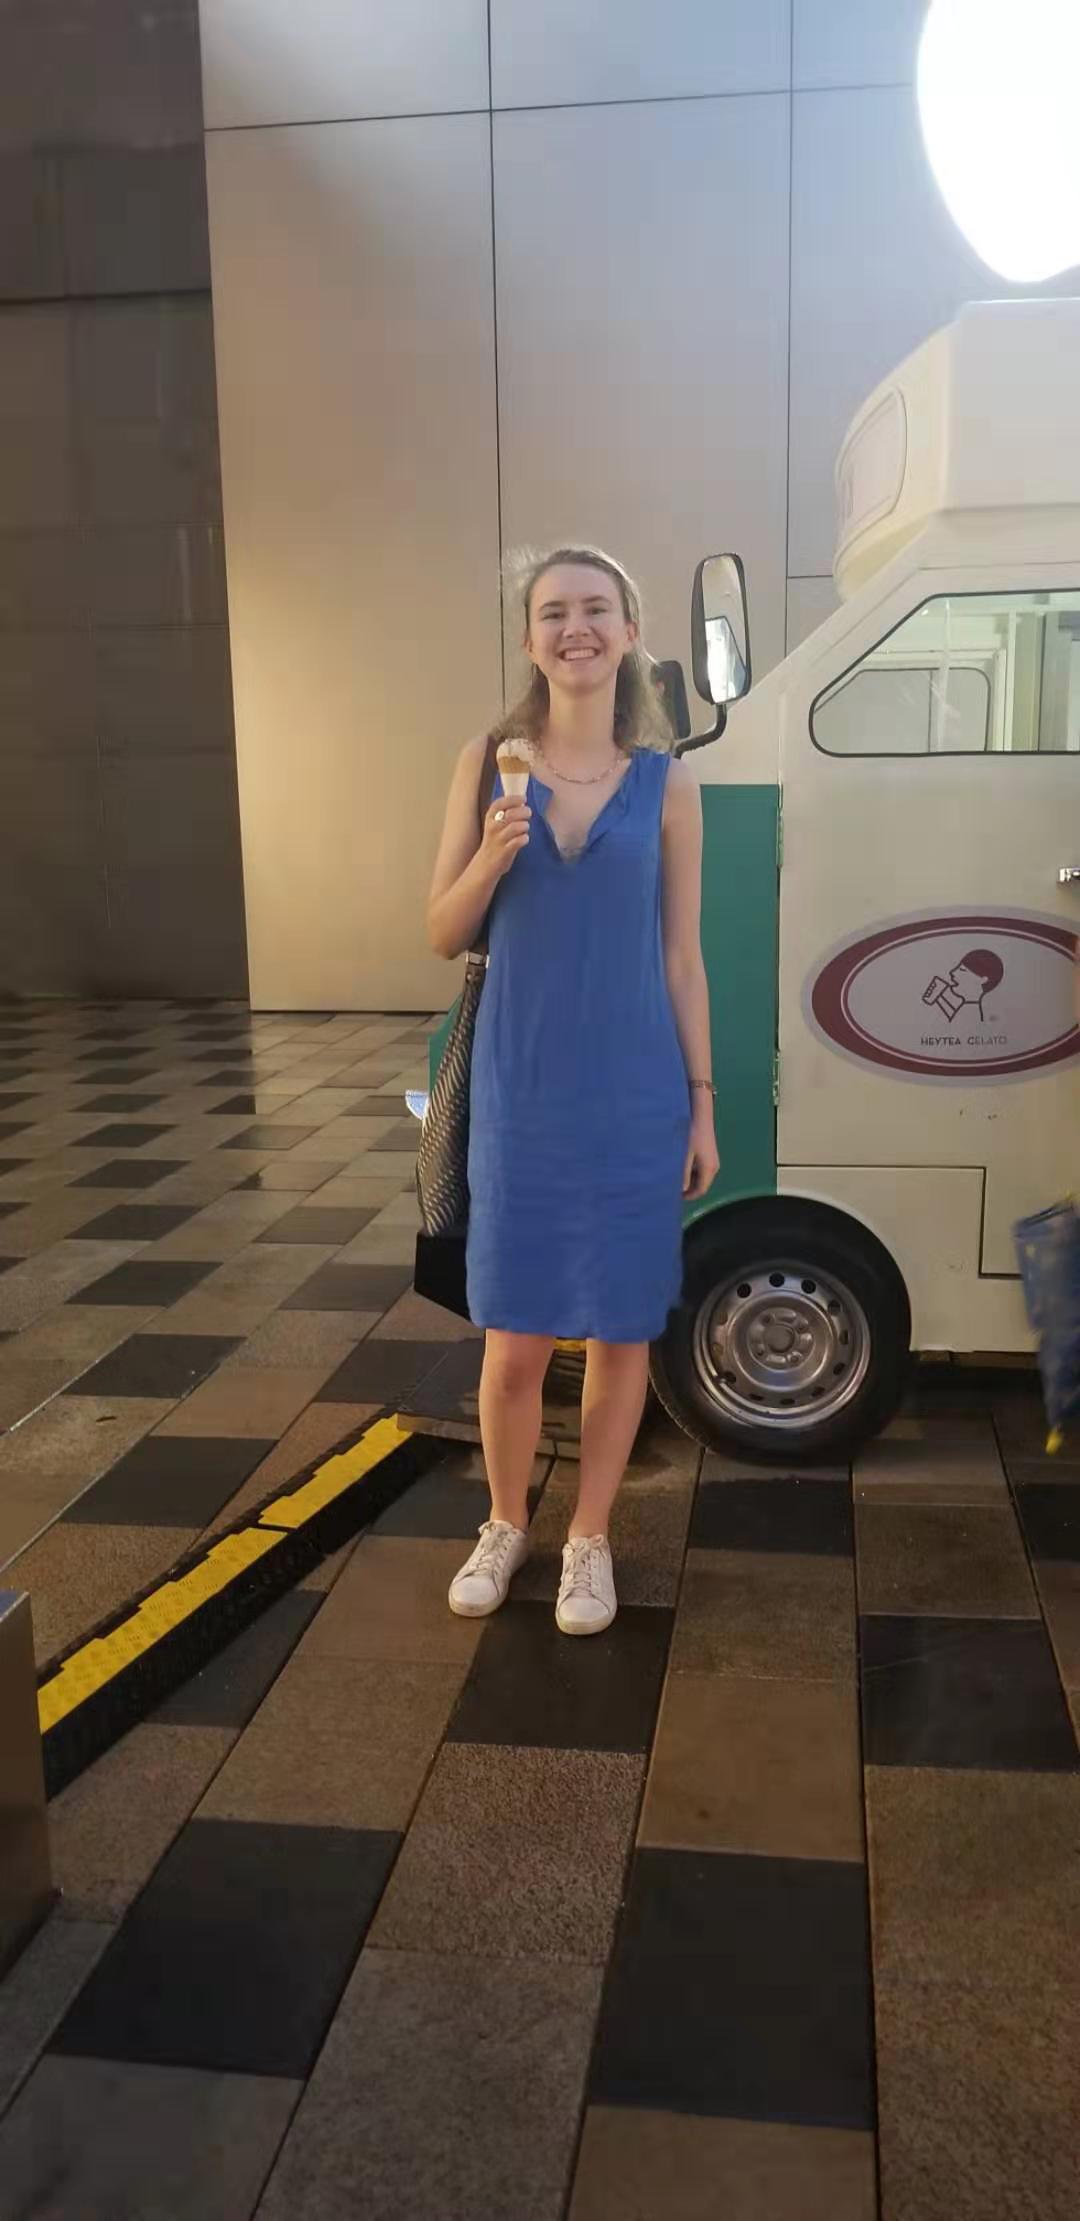 Emily & her matcha gelato